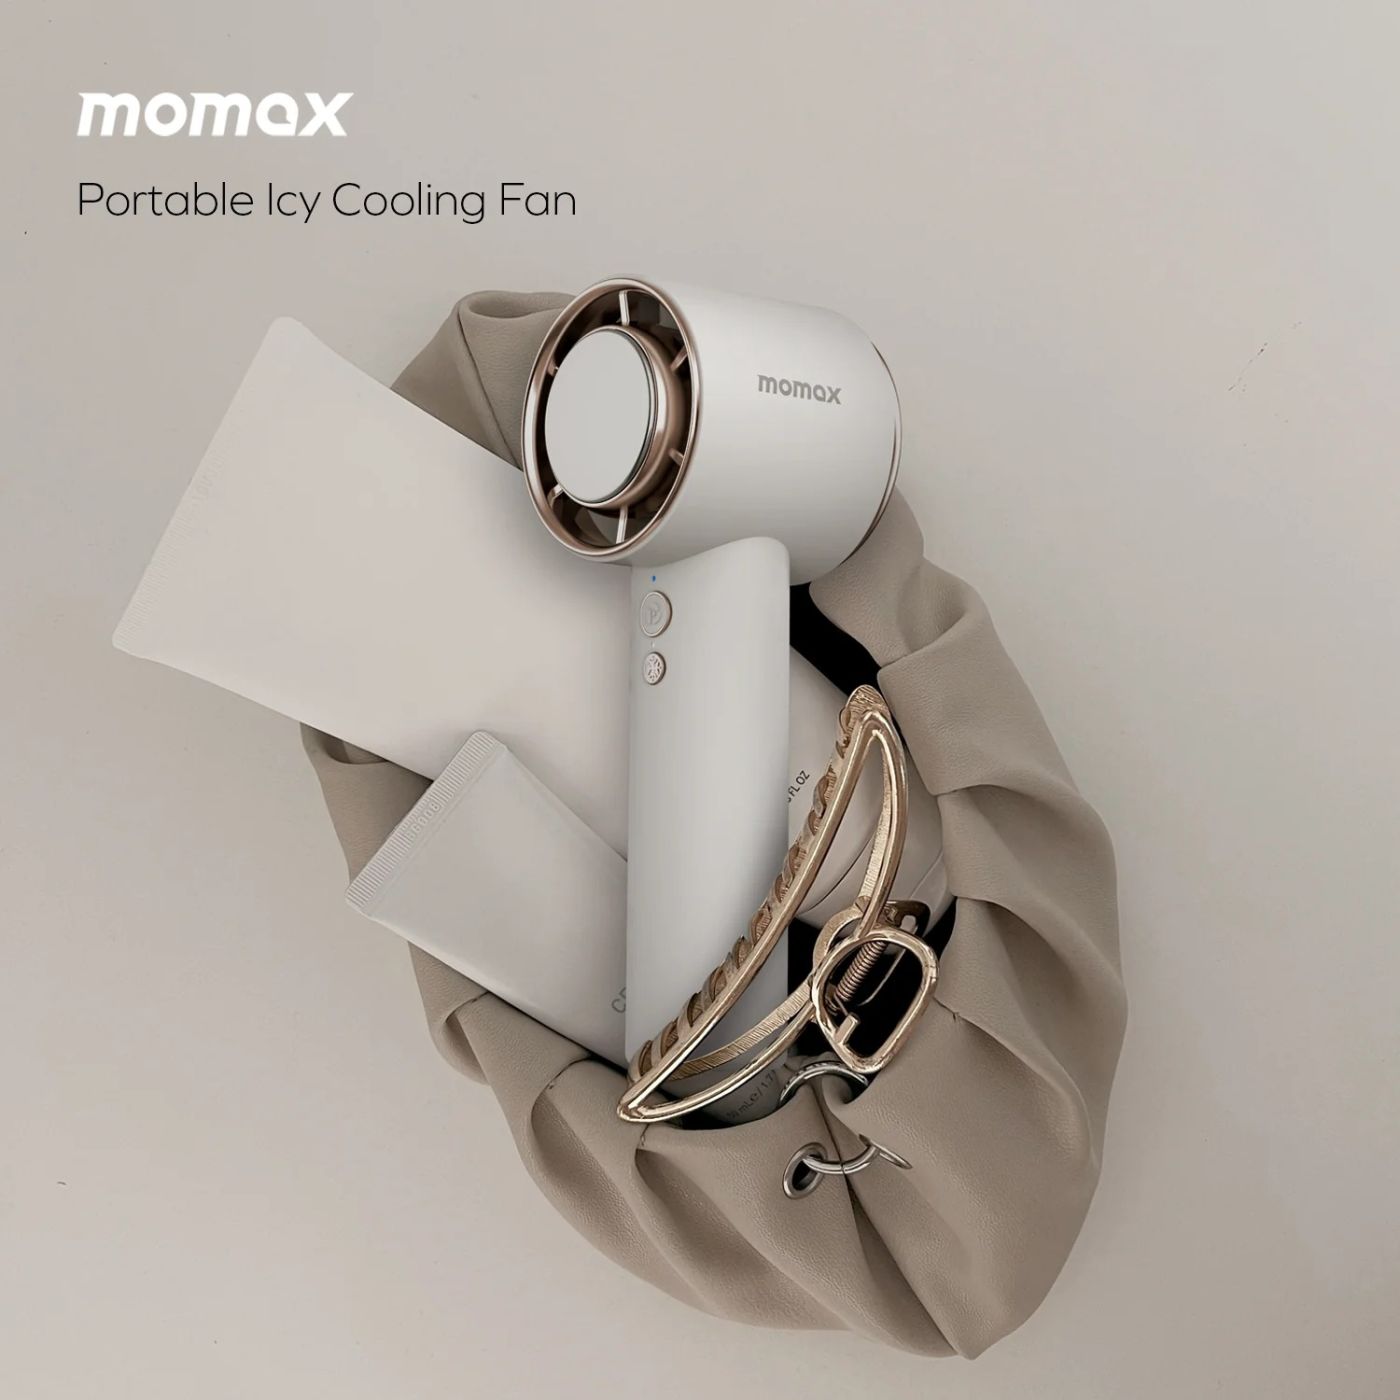 Quạt cầm tay Momax IF15 Ultra Freeze Portable Icy Cooling Fan (12000RPM | Chức năng làm lạnh | 3000m